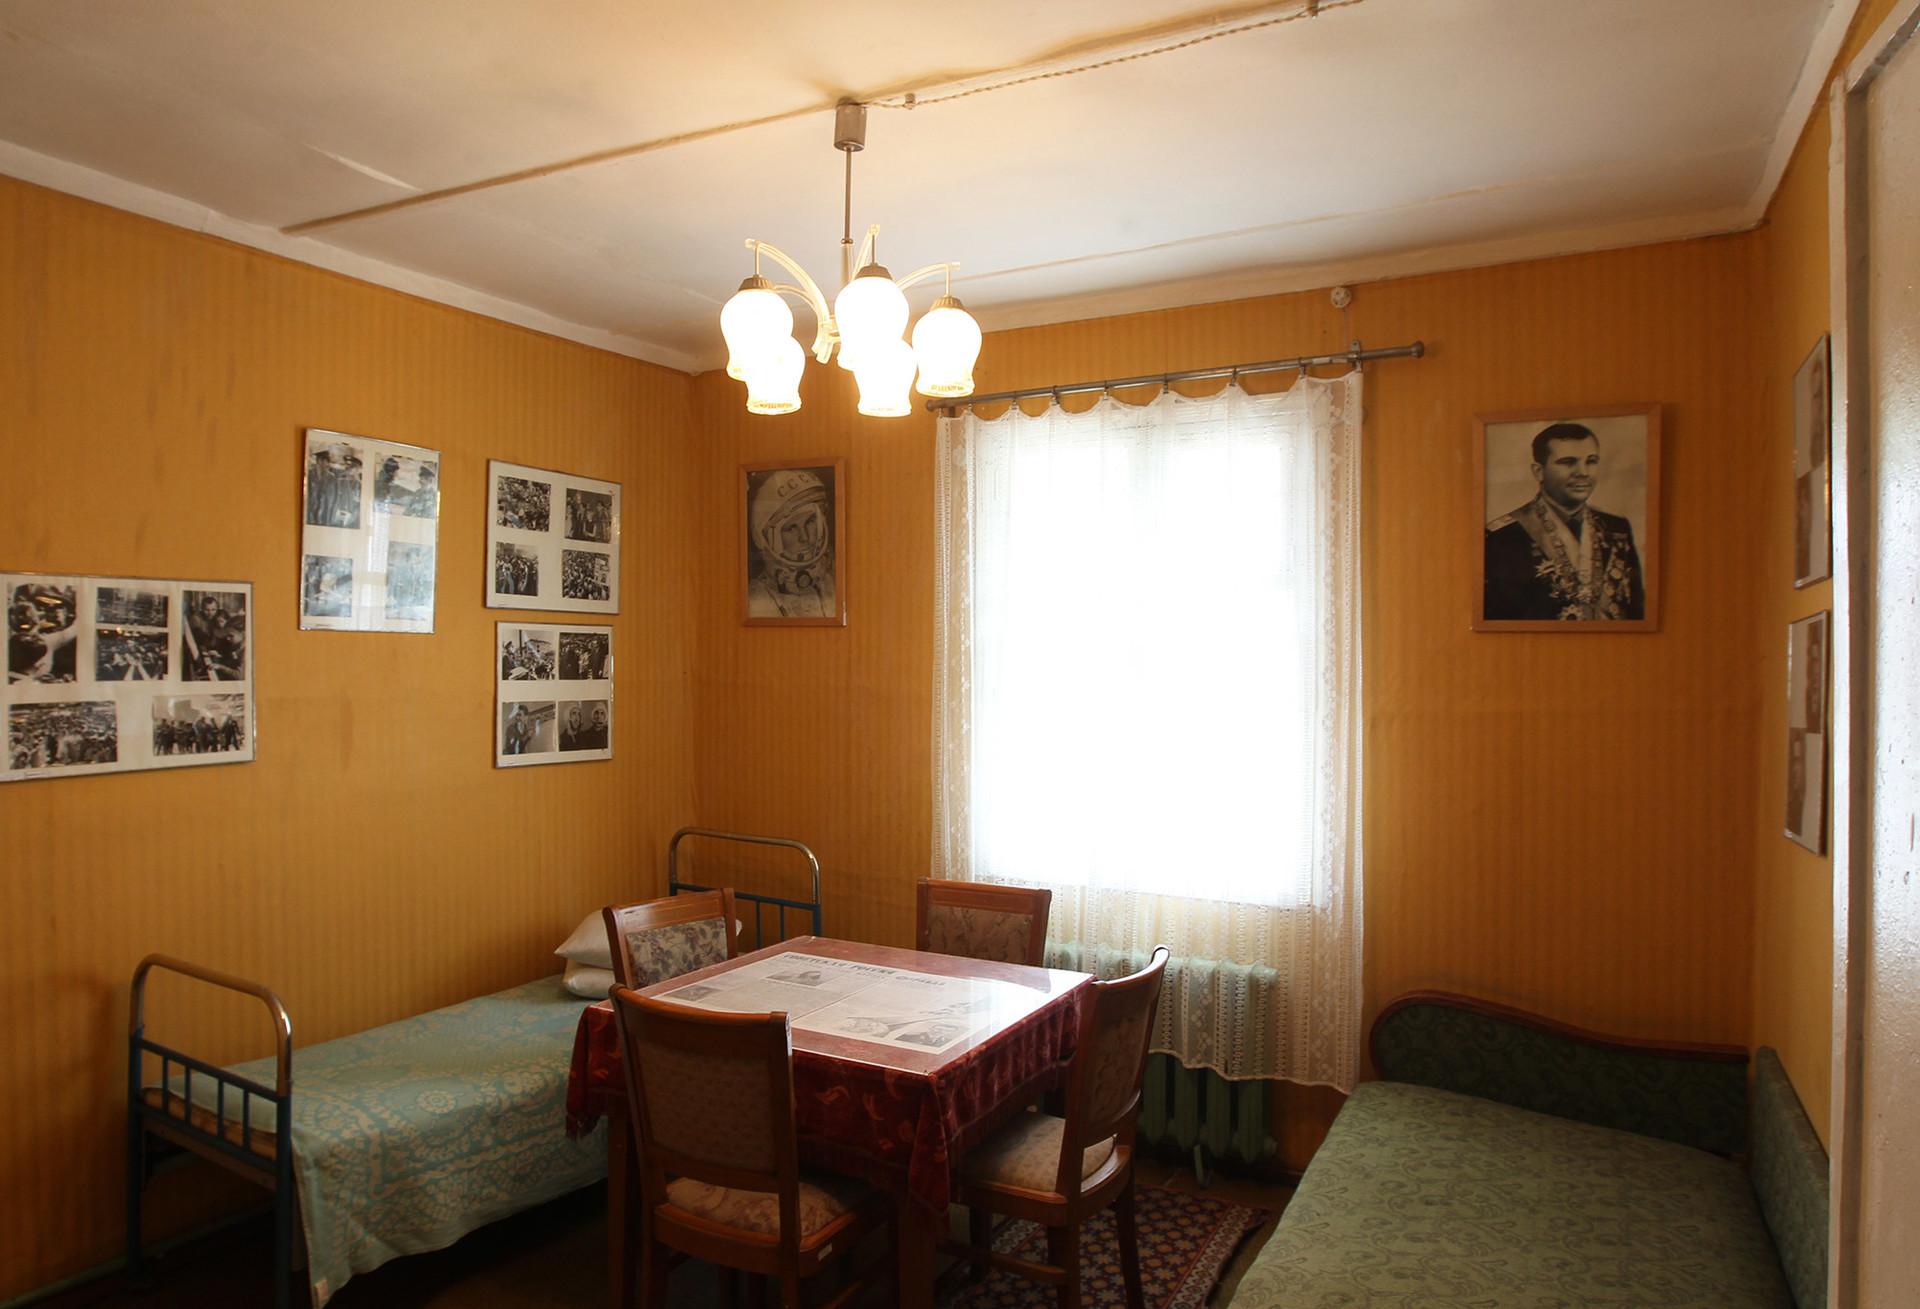 Intérieur de la maison de Iouri Gagarine, partie de l'exposition du musée du cosmodrome de Baïkonour